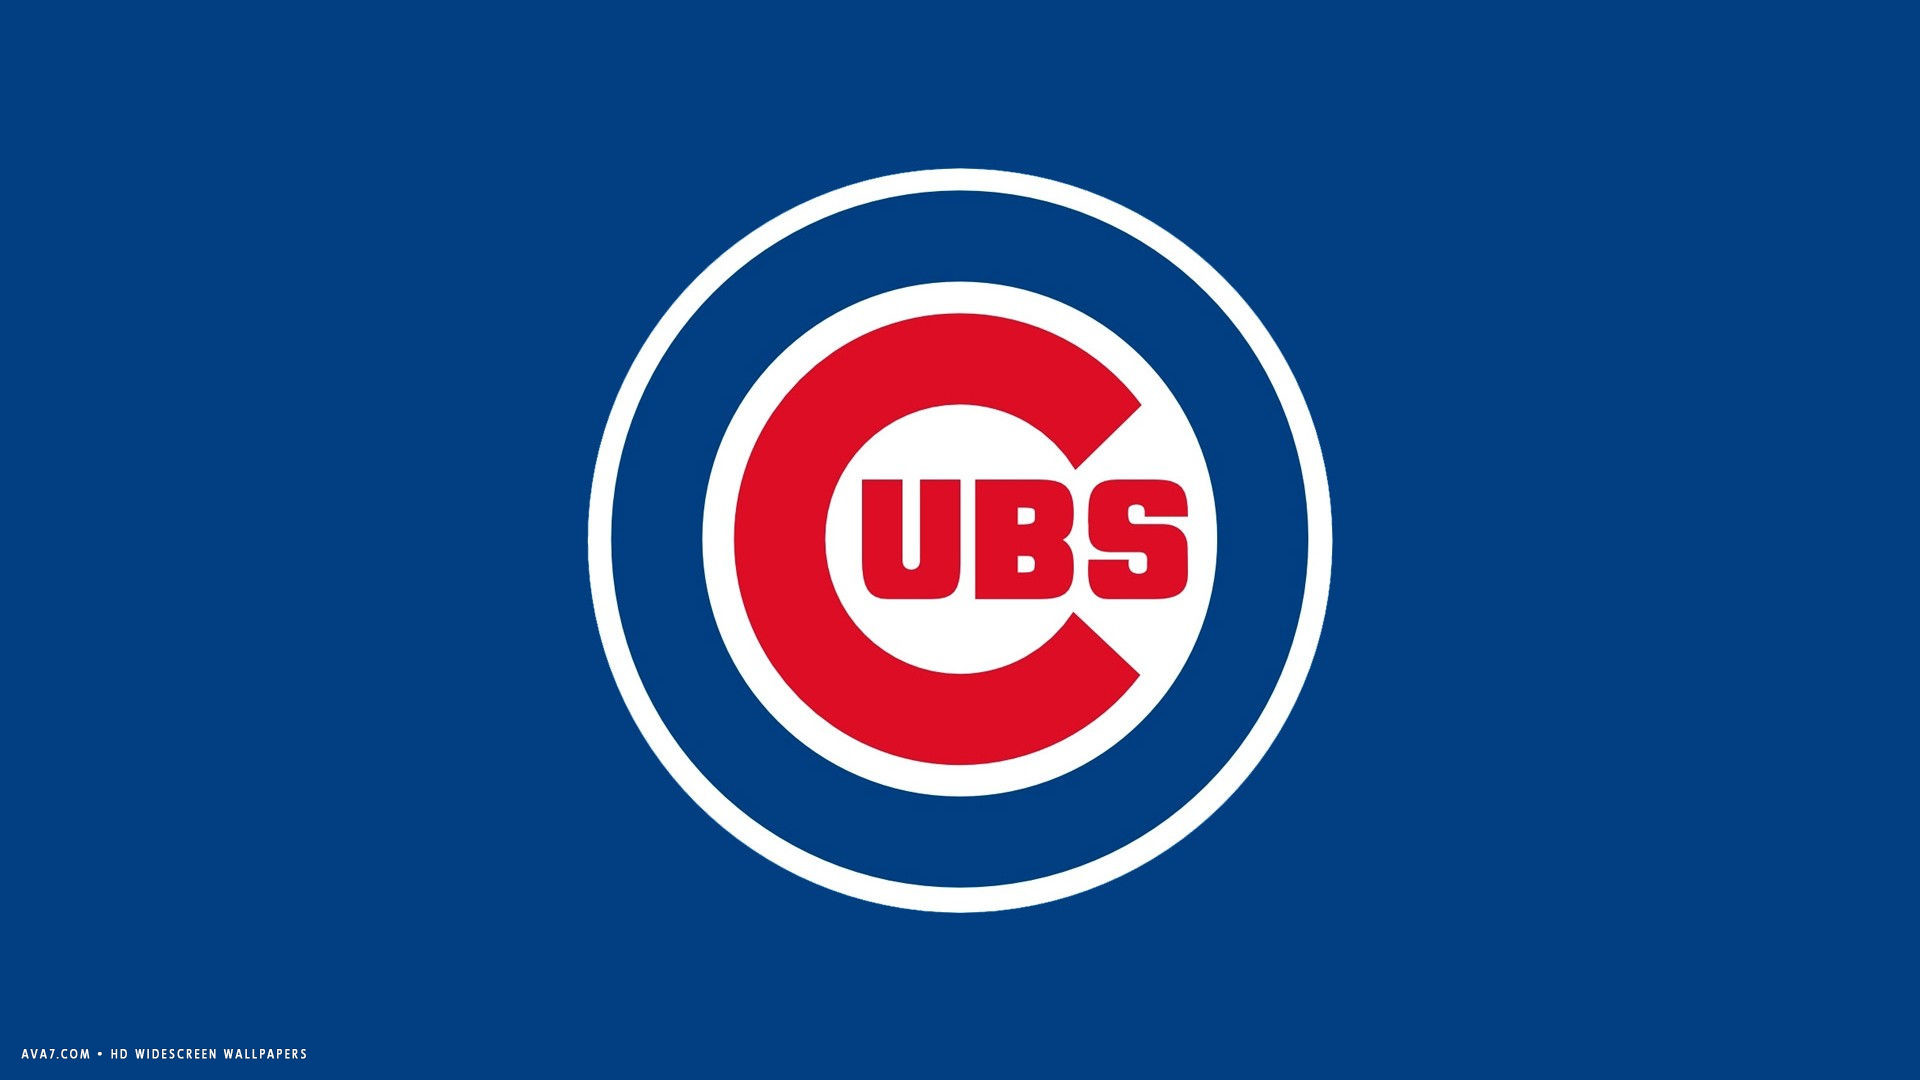 Chicago Cubs Mlb Baseball Team Hd Widescreen Wallpaper 1920x1080